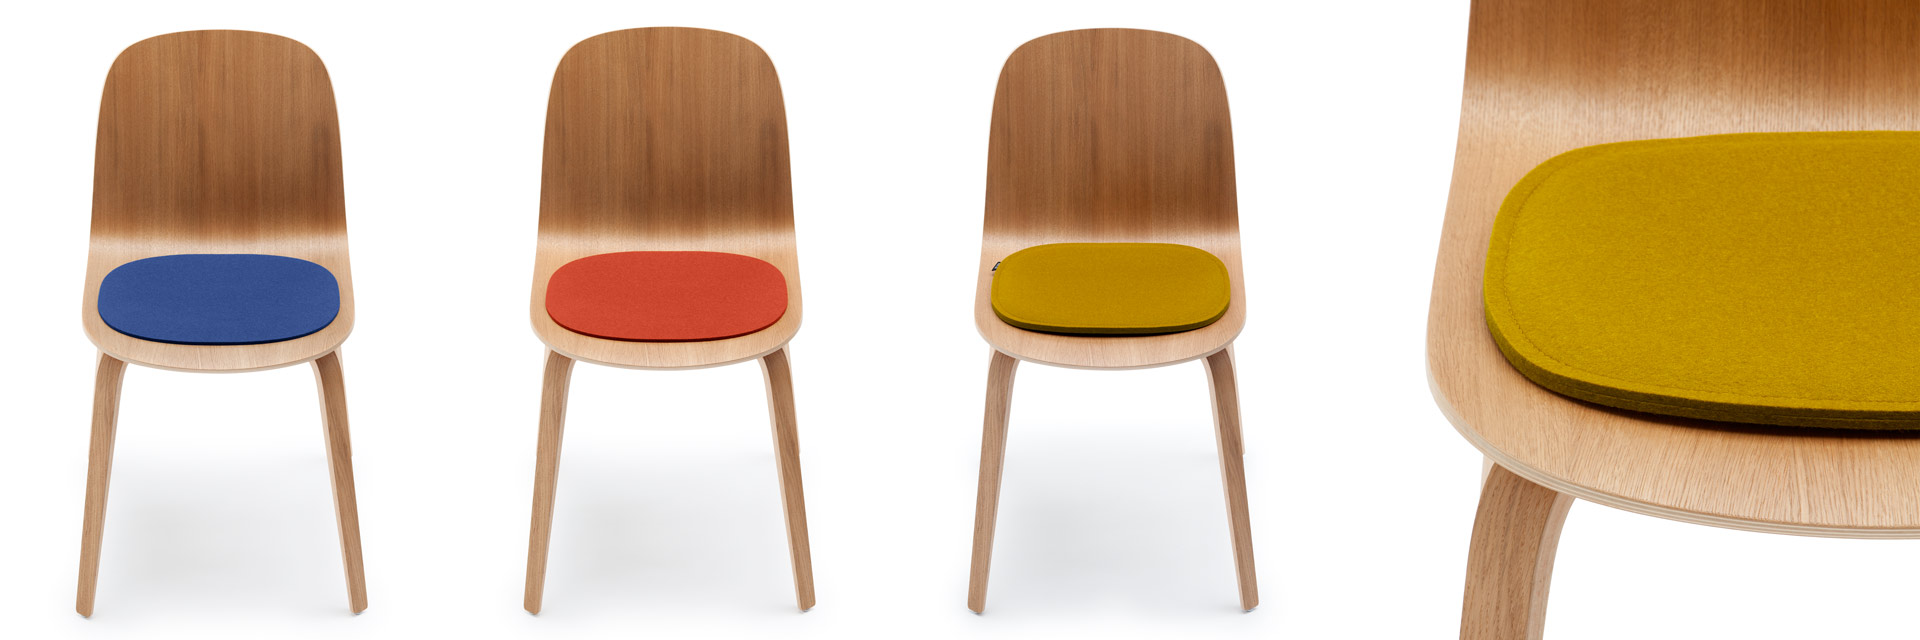 Sitzauflagen - Design Filzauflagen für Stühle